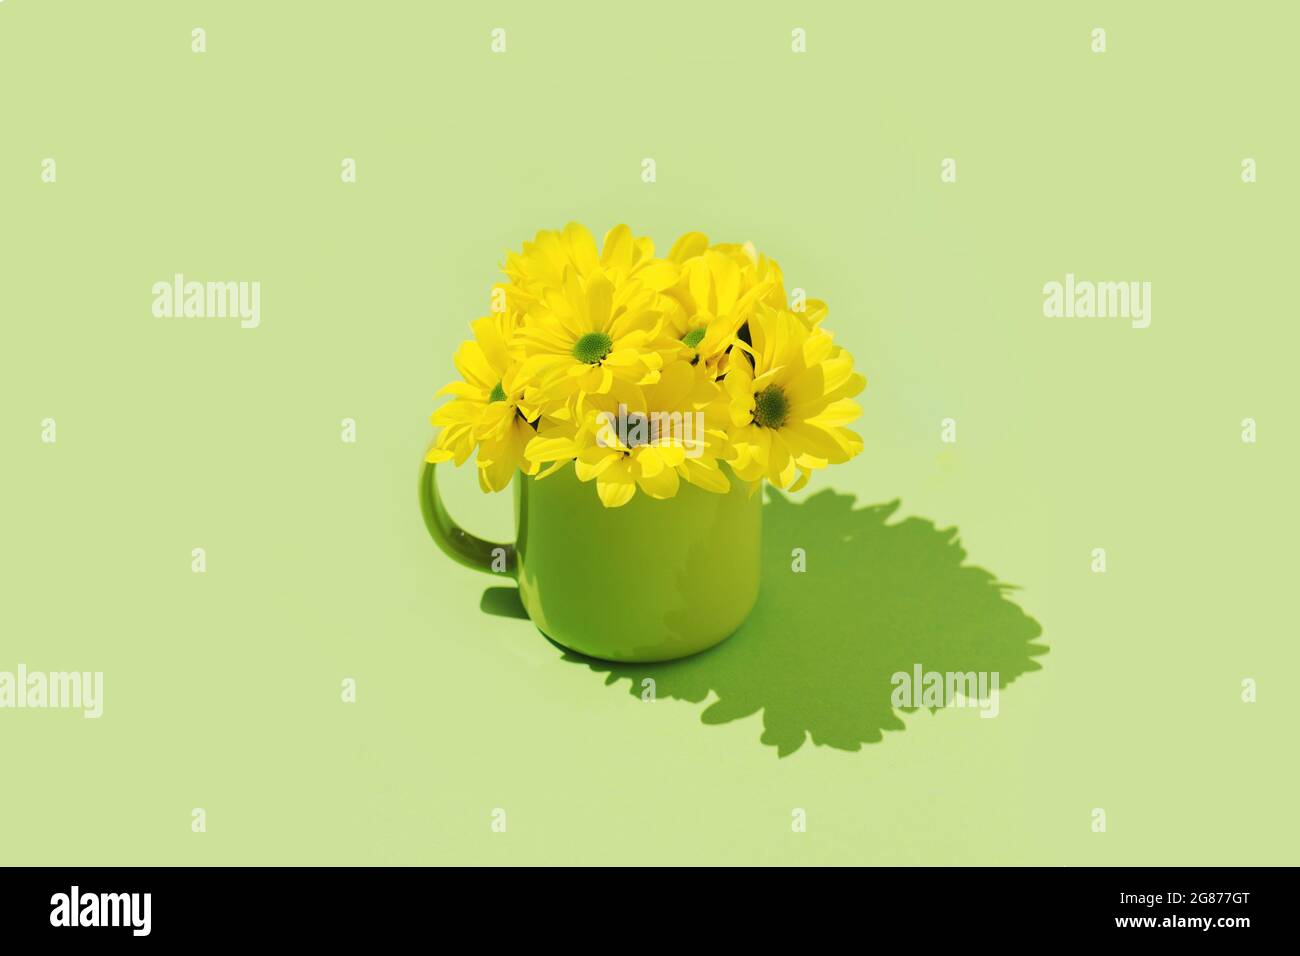 Gelbe Gänseblümchen Kamille Blumen grün Hintergrund minimal Konzept Hintergrund Cover Bild Tapete Stockfoto